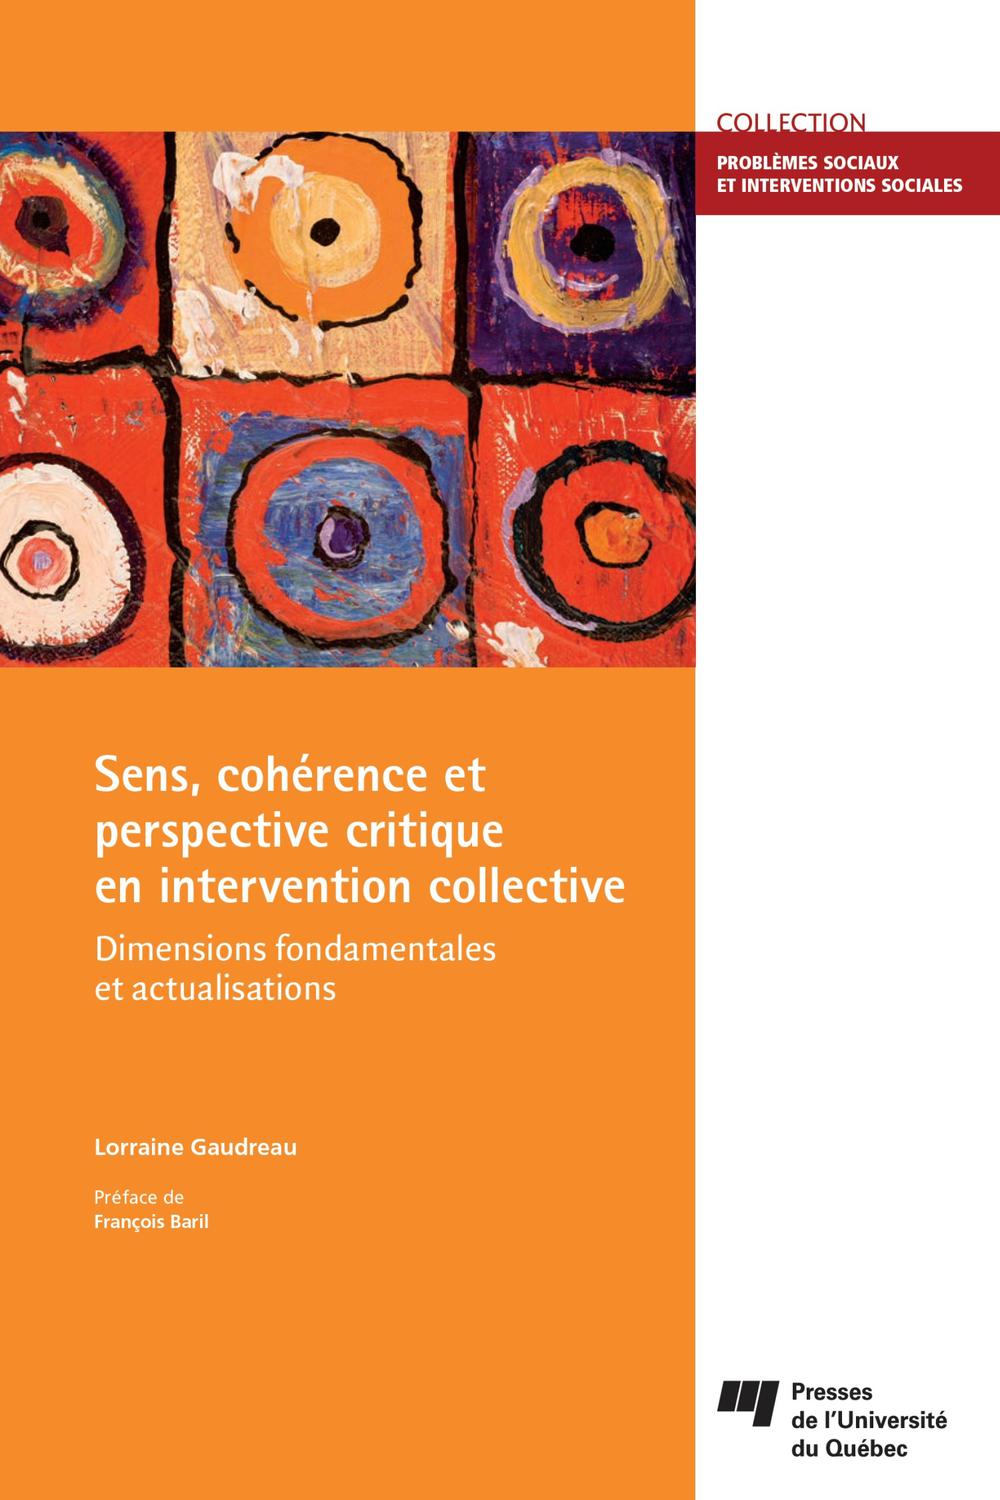 Sens, cohérence et perspective critique en intervention collective - Lorraine Gaudreau